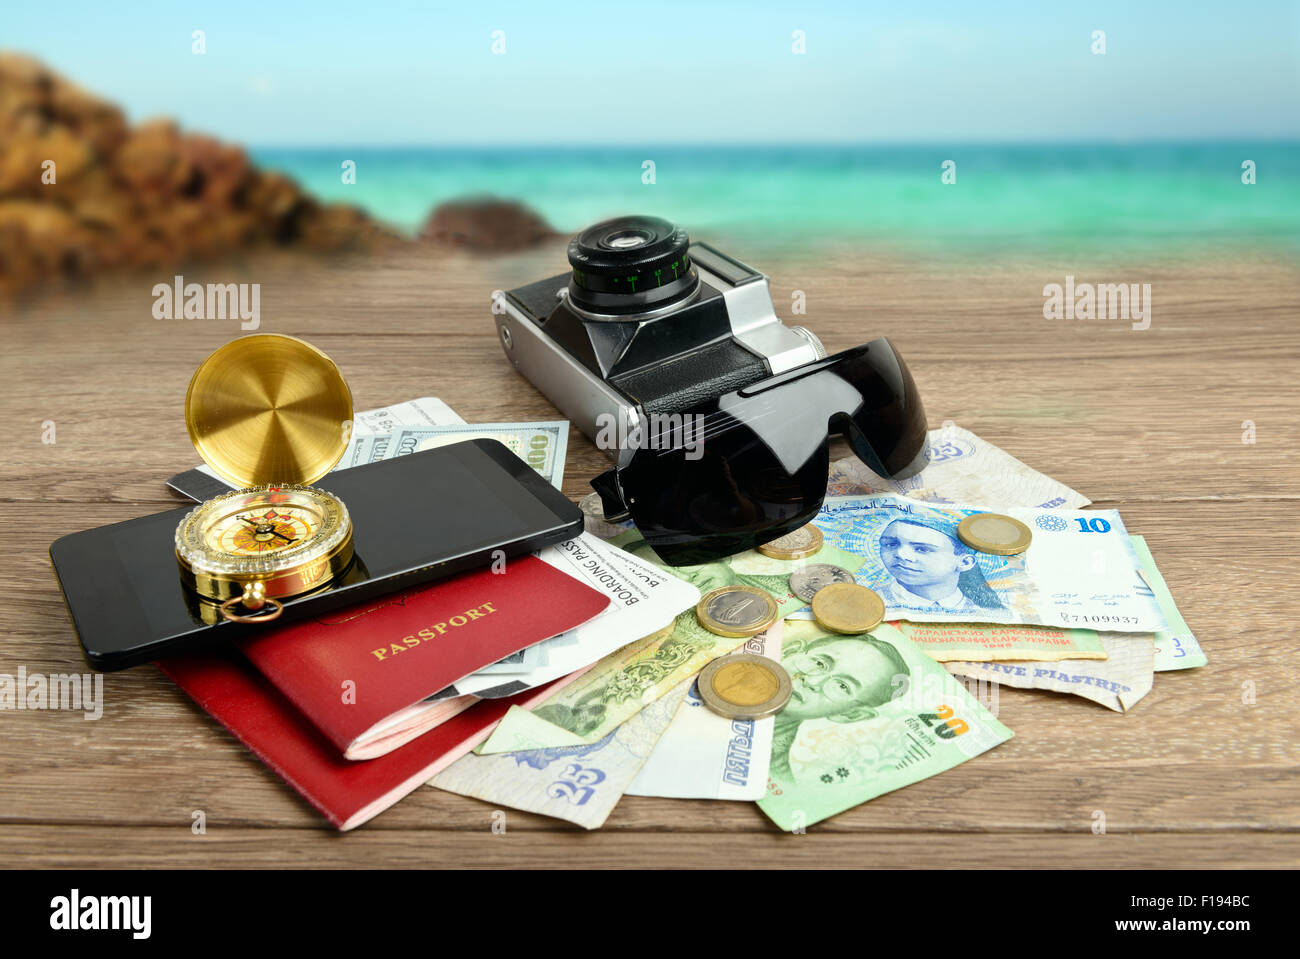 Travel concept, collage d'articles de voyage et sur la mer Banque D'Images